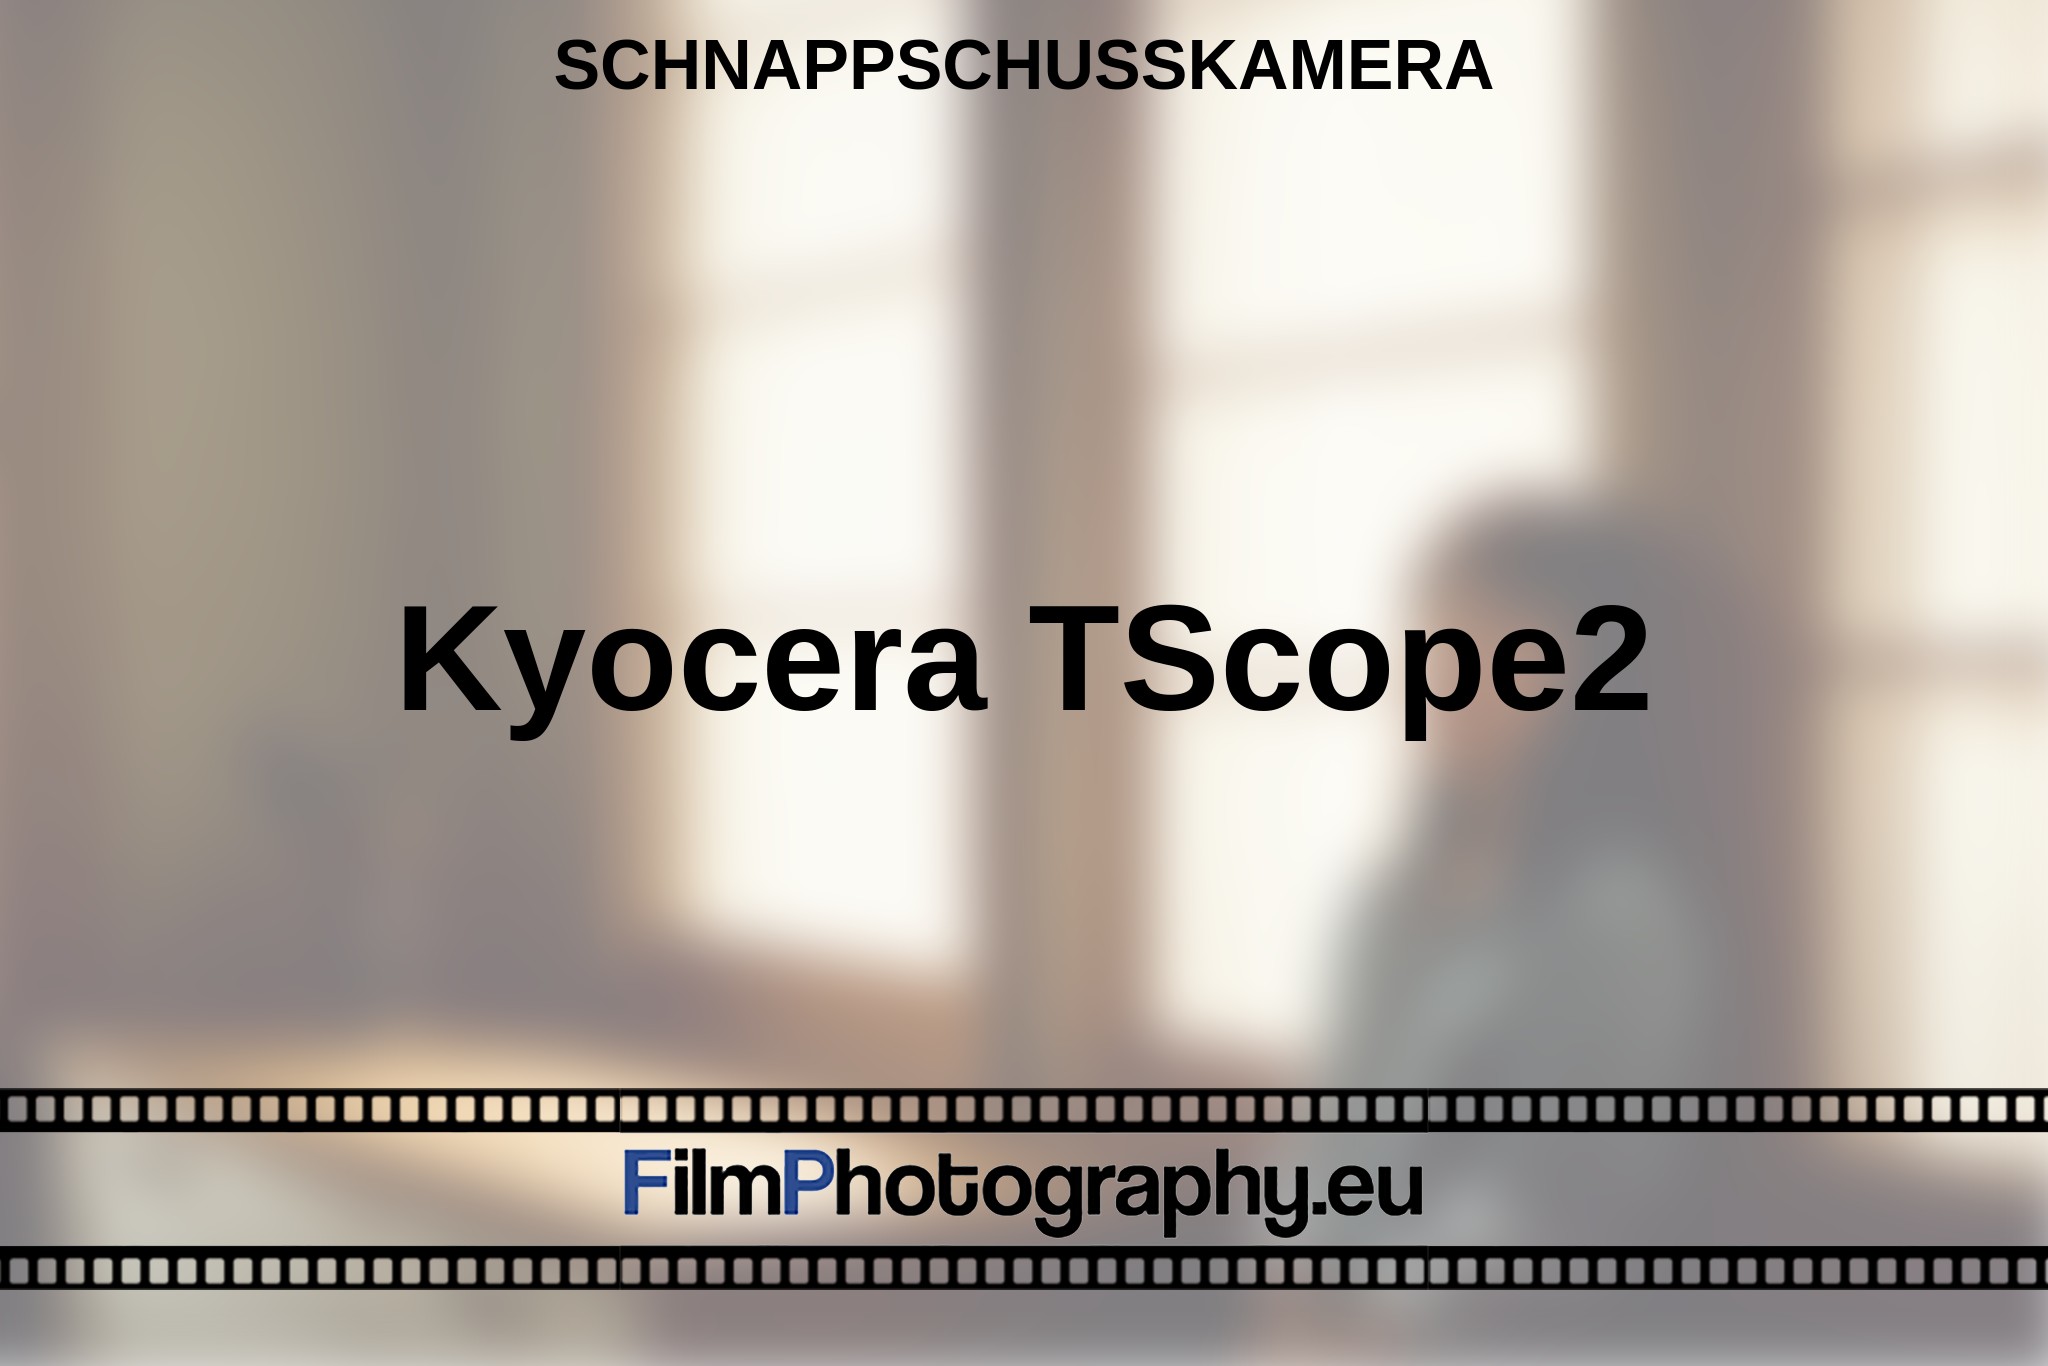 kyocera-tscope2-schnappschusskamera-bnv.jpg